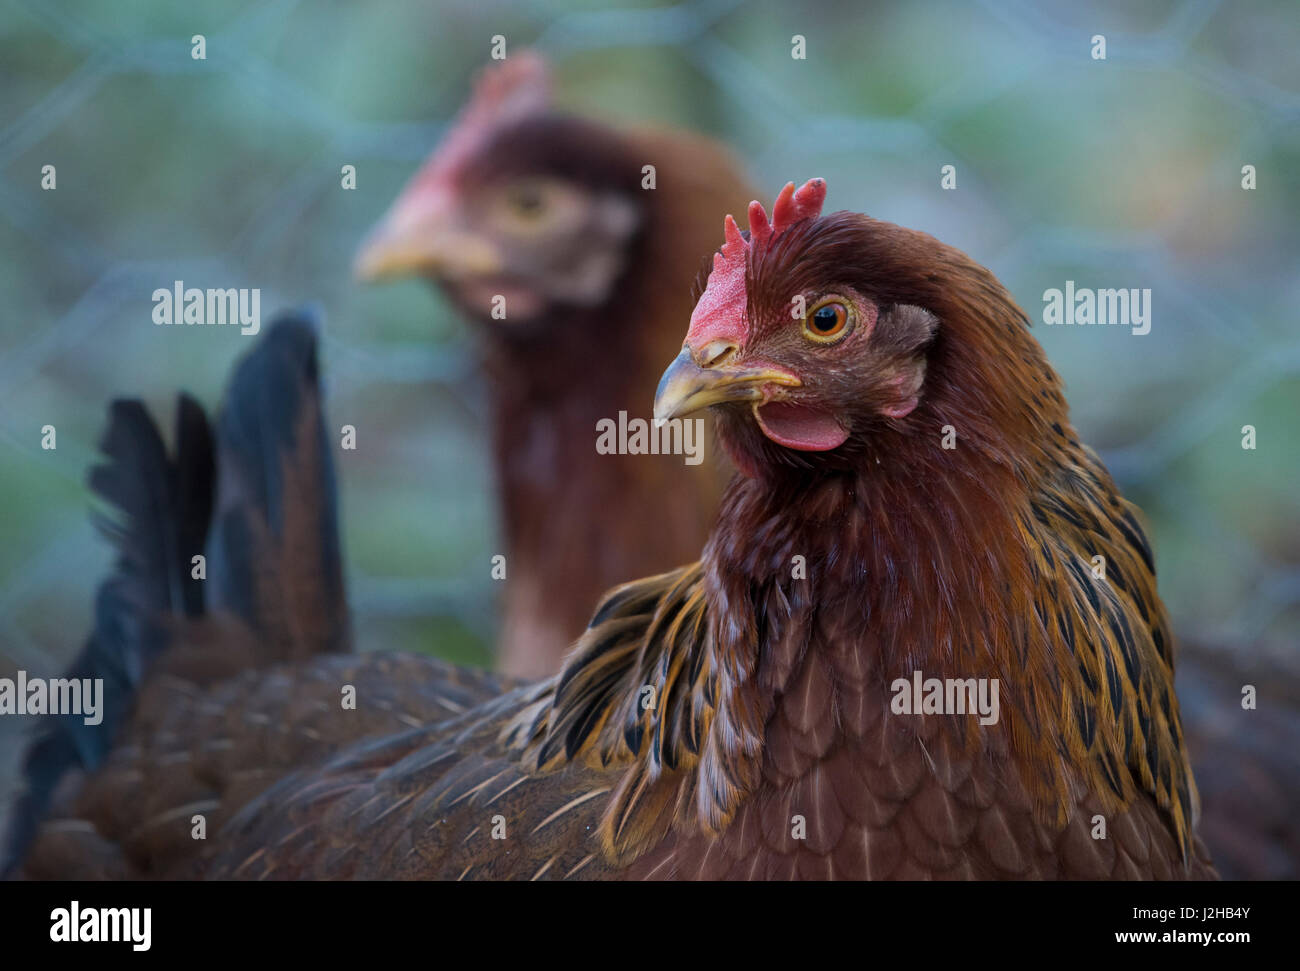 Nahaufnahme eines Welsummer oder Welsumer Hühners, einer holländischen Rasse von heimischen Hühnern, in einem Garten, Chipping, Lancashire.UK Stockfoto